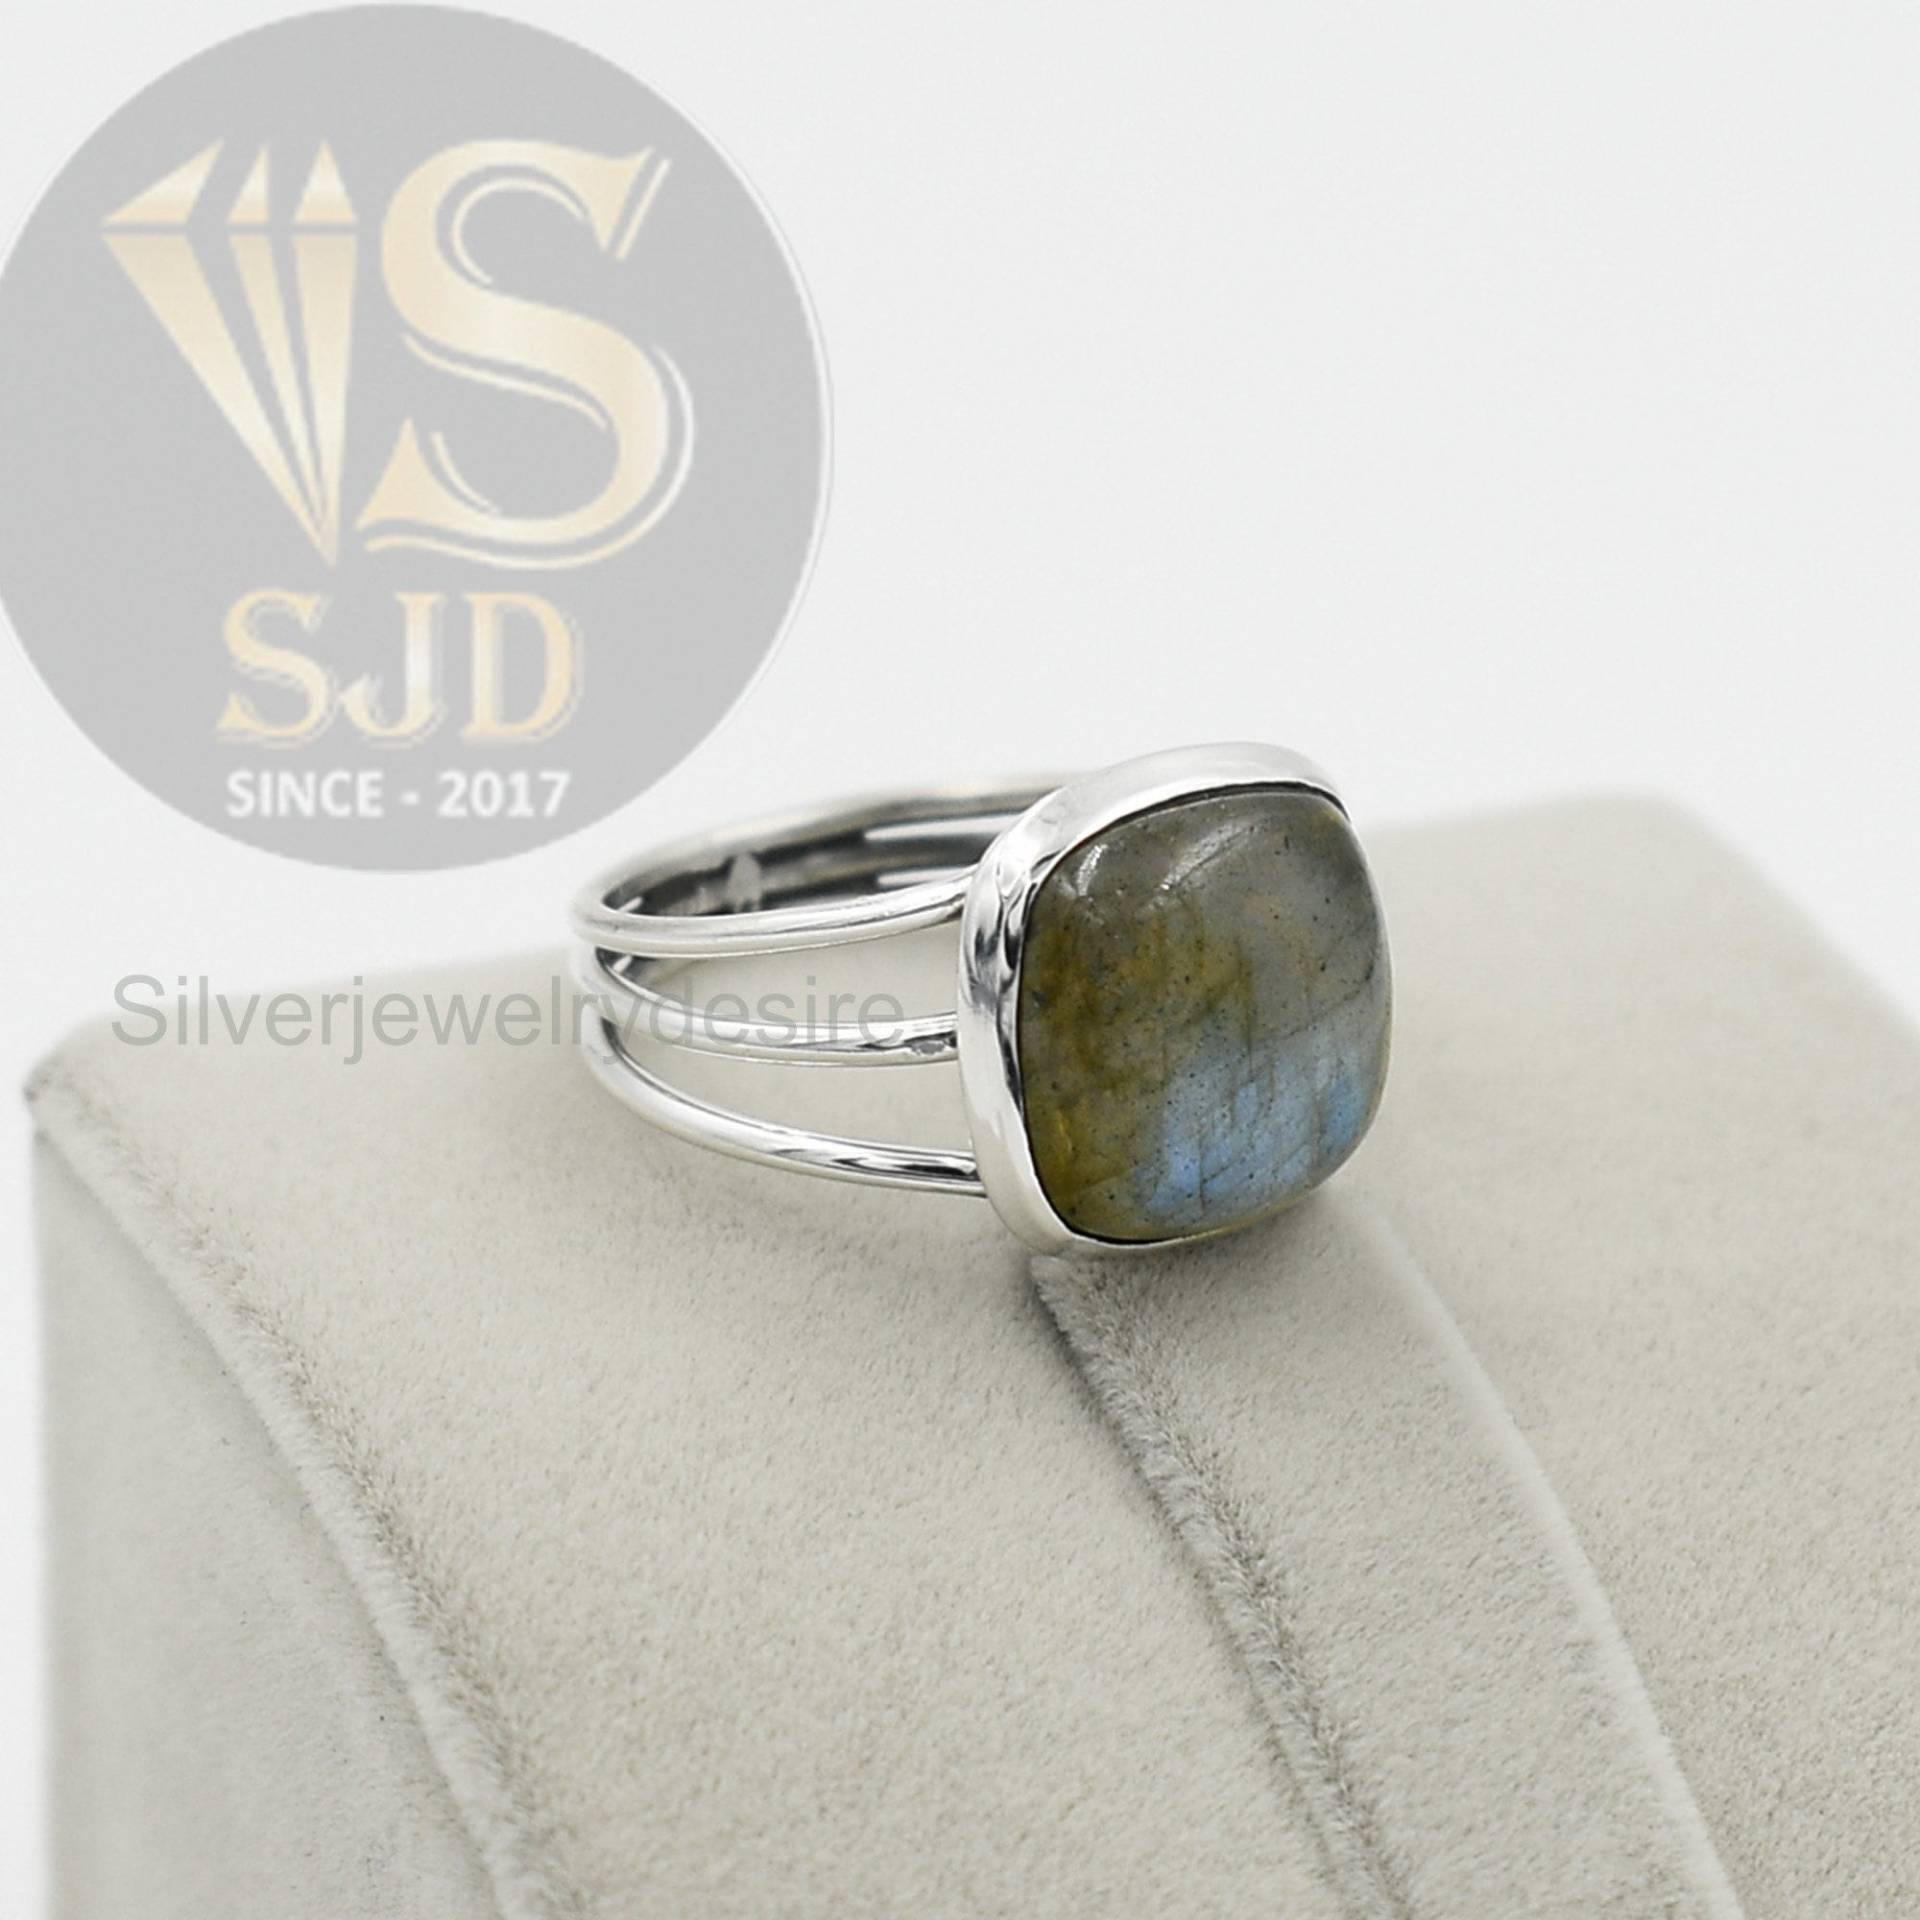 Labradorit-Ring, 925 Sterling Silber Ring, Labradorit 12 Mm Kissen-Edelstein-Ring, Silberring, Boho-Ring, Dreifach-Band-Ring, Damenring von silverjewelrydesire